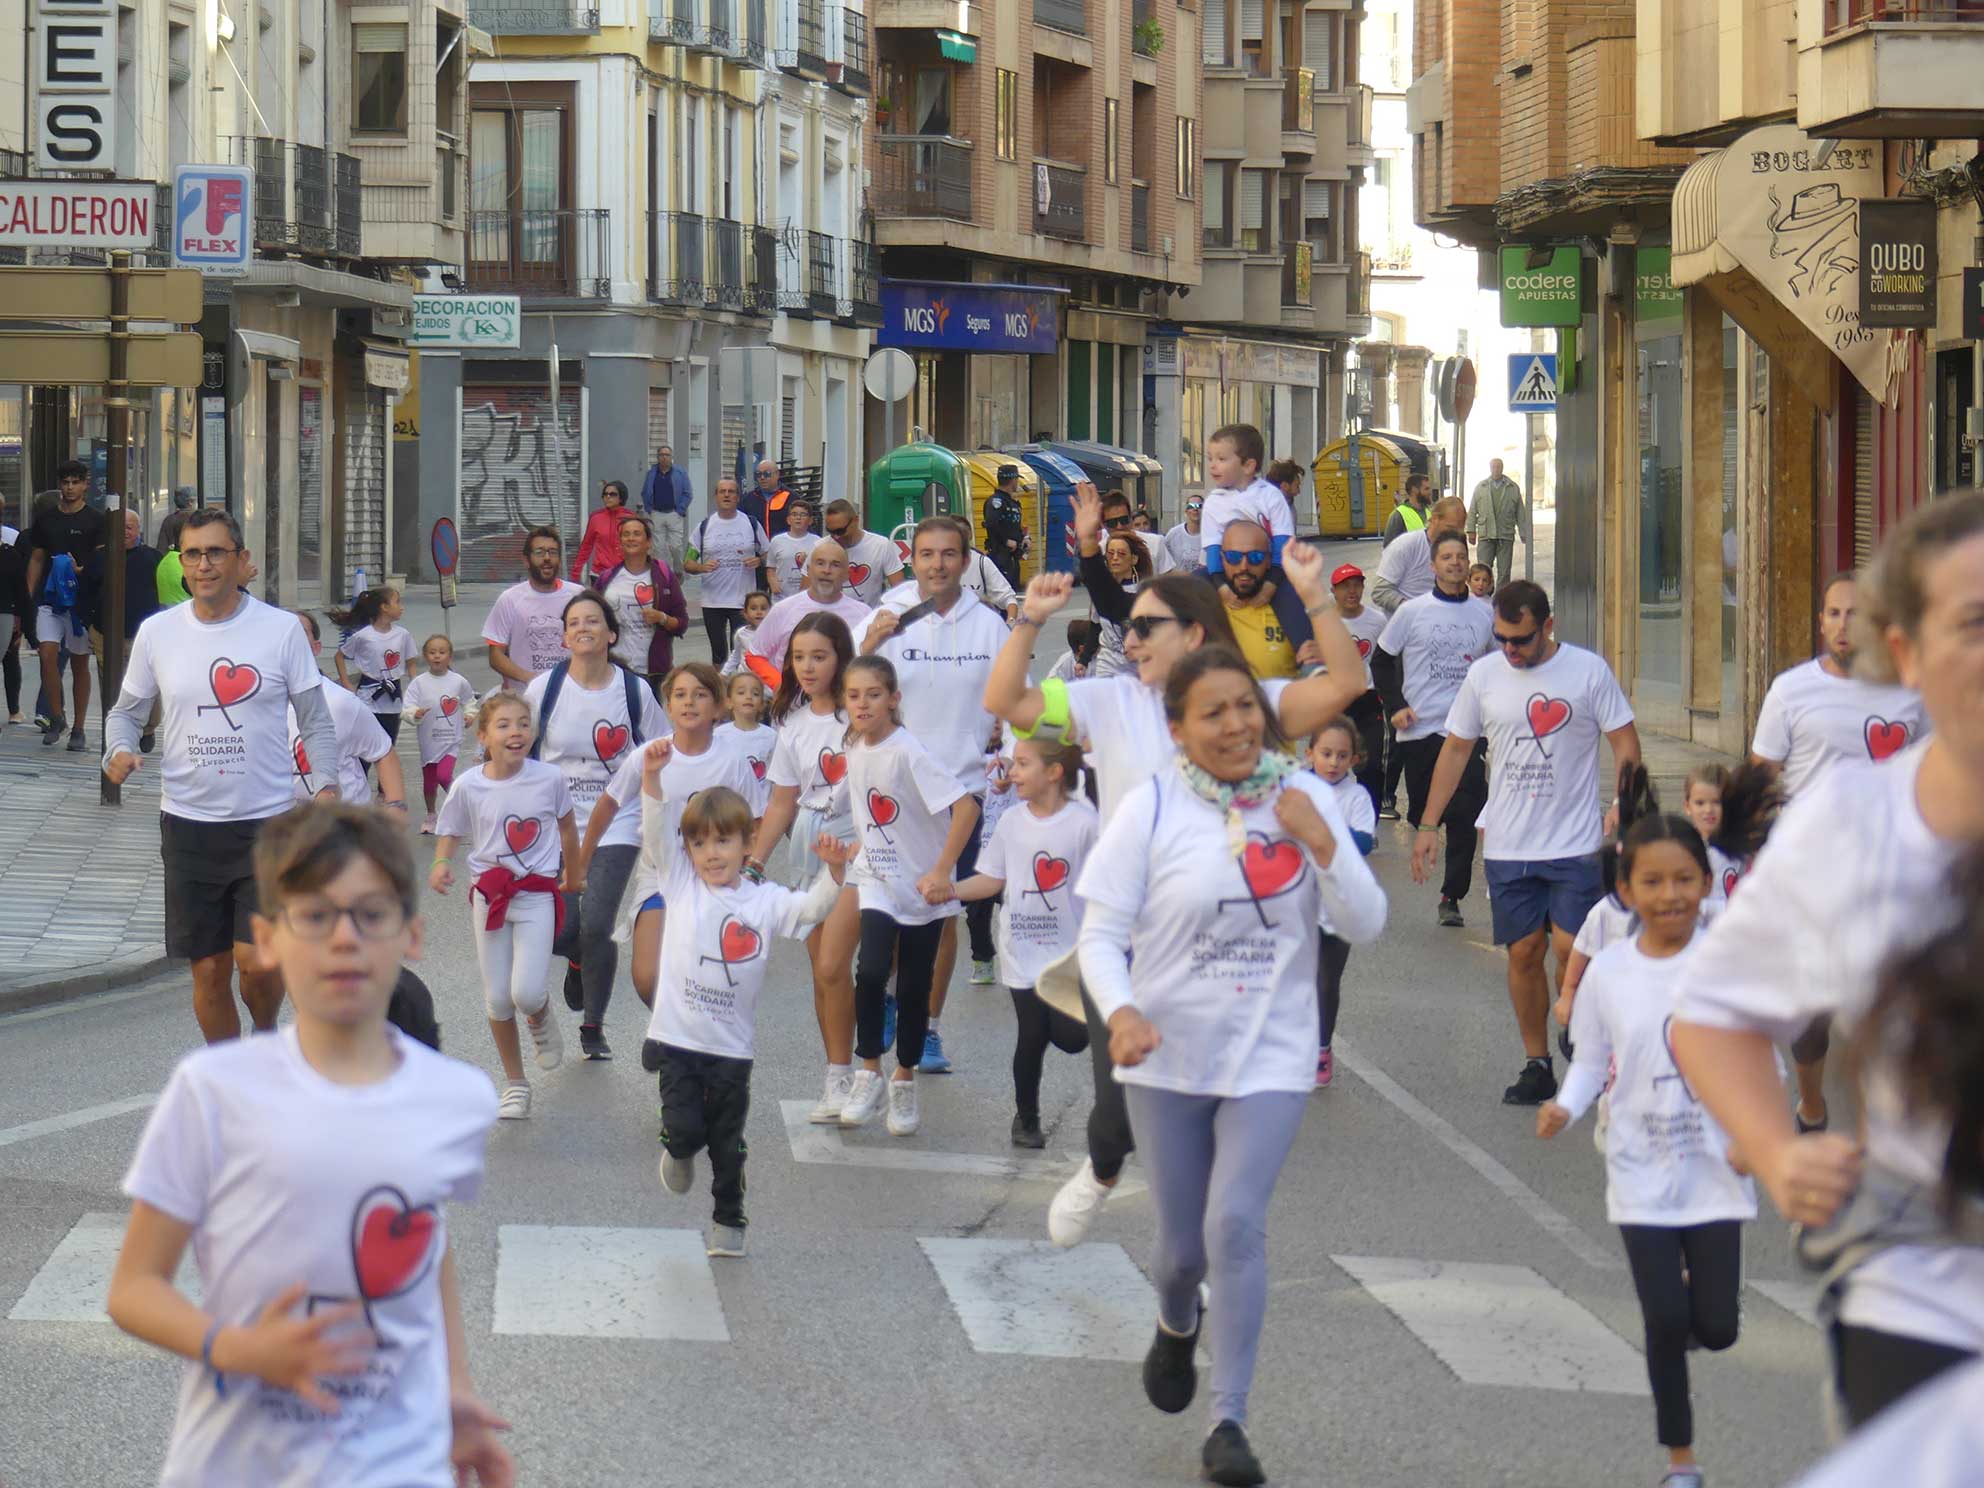 En torno a 800 personas participan en la 11ª Carrera Solidaria por la Infancia organizada por Cruz Roja en Cuenca